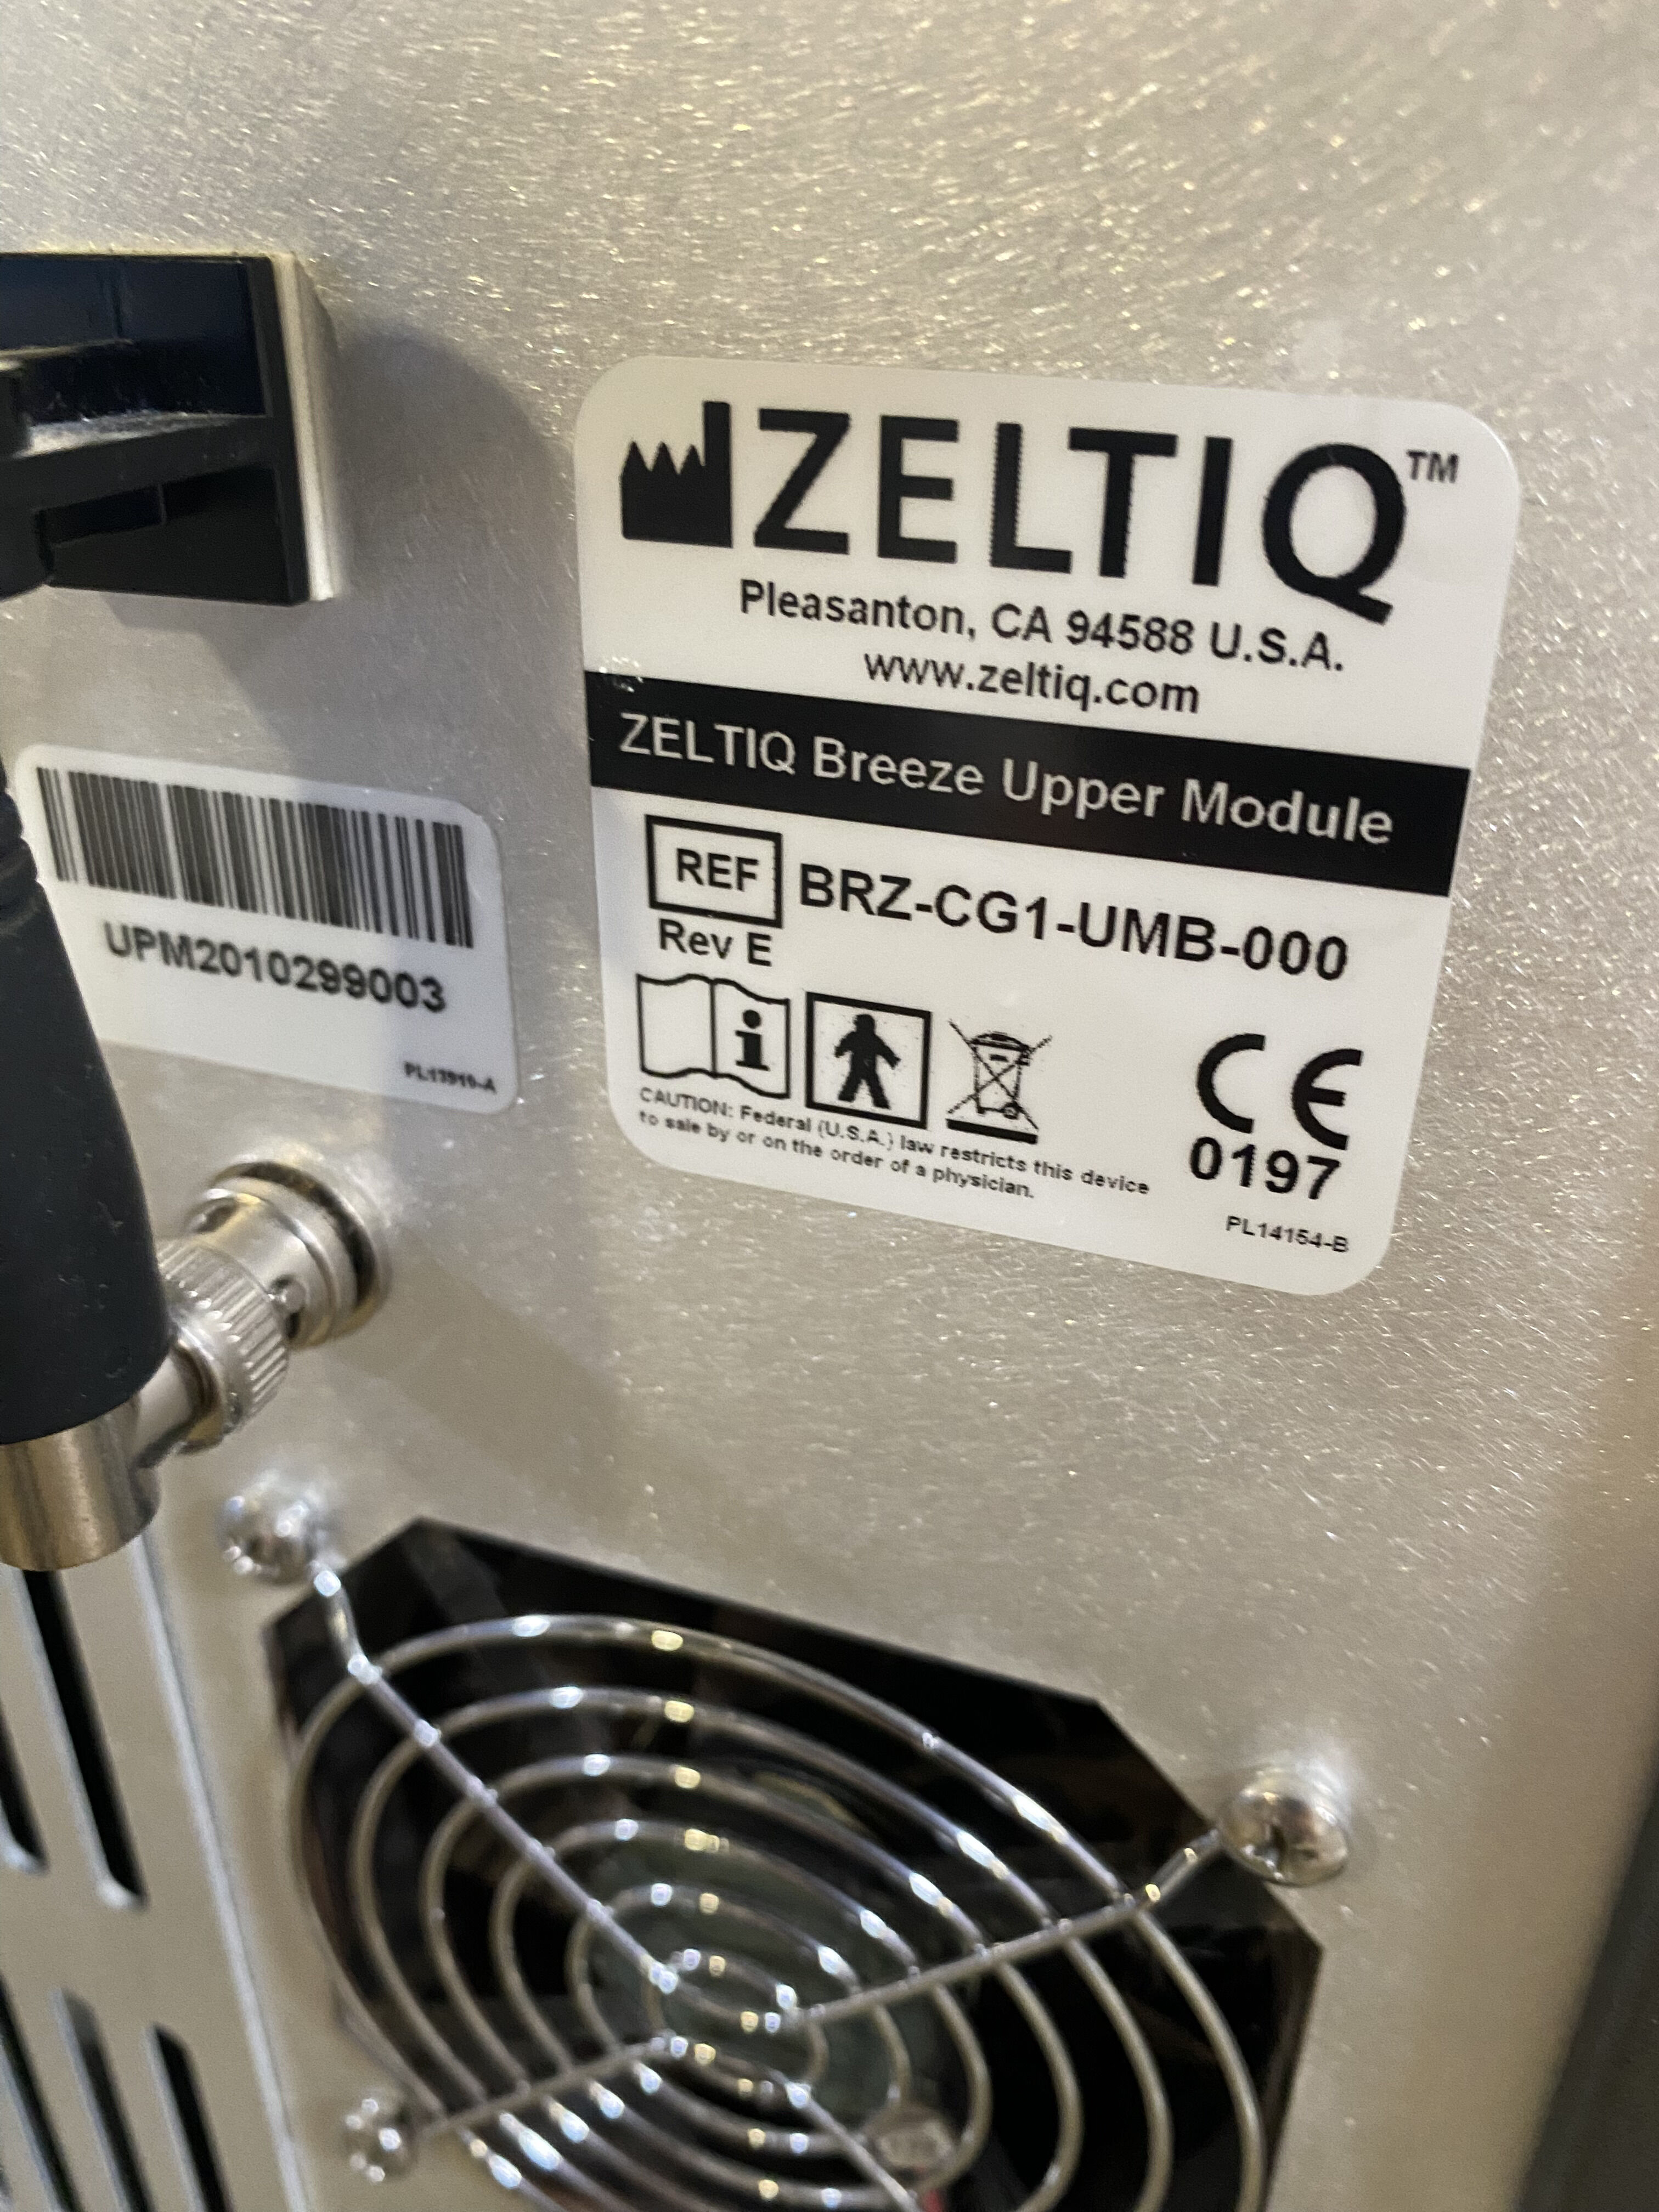 ZELTIQ Coolsculpting System